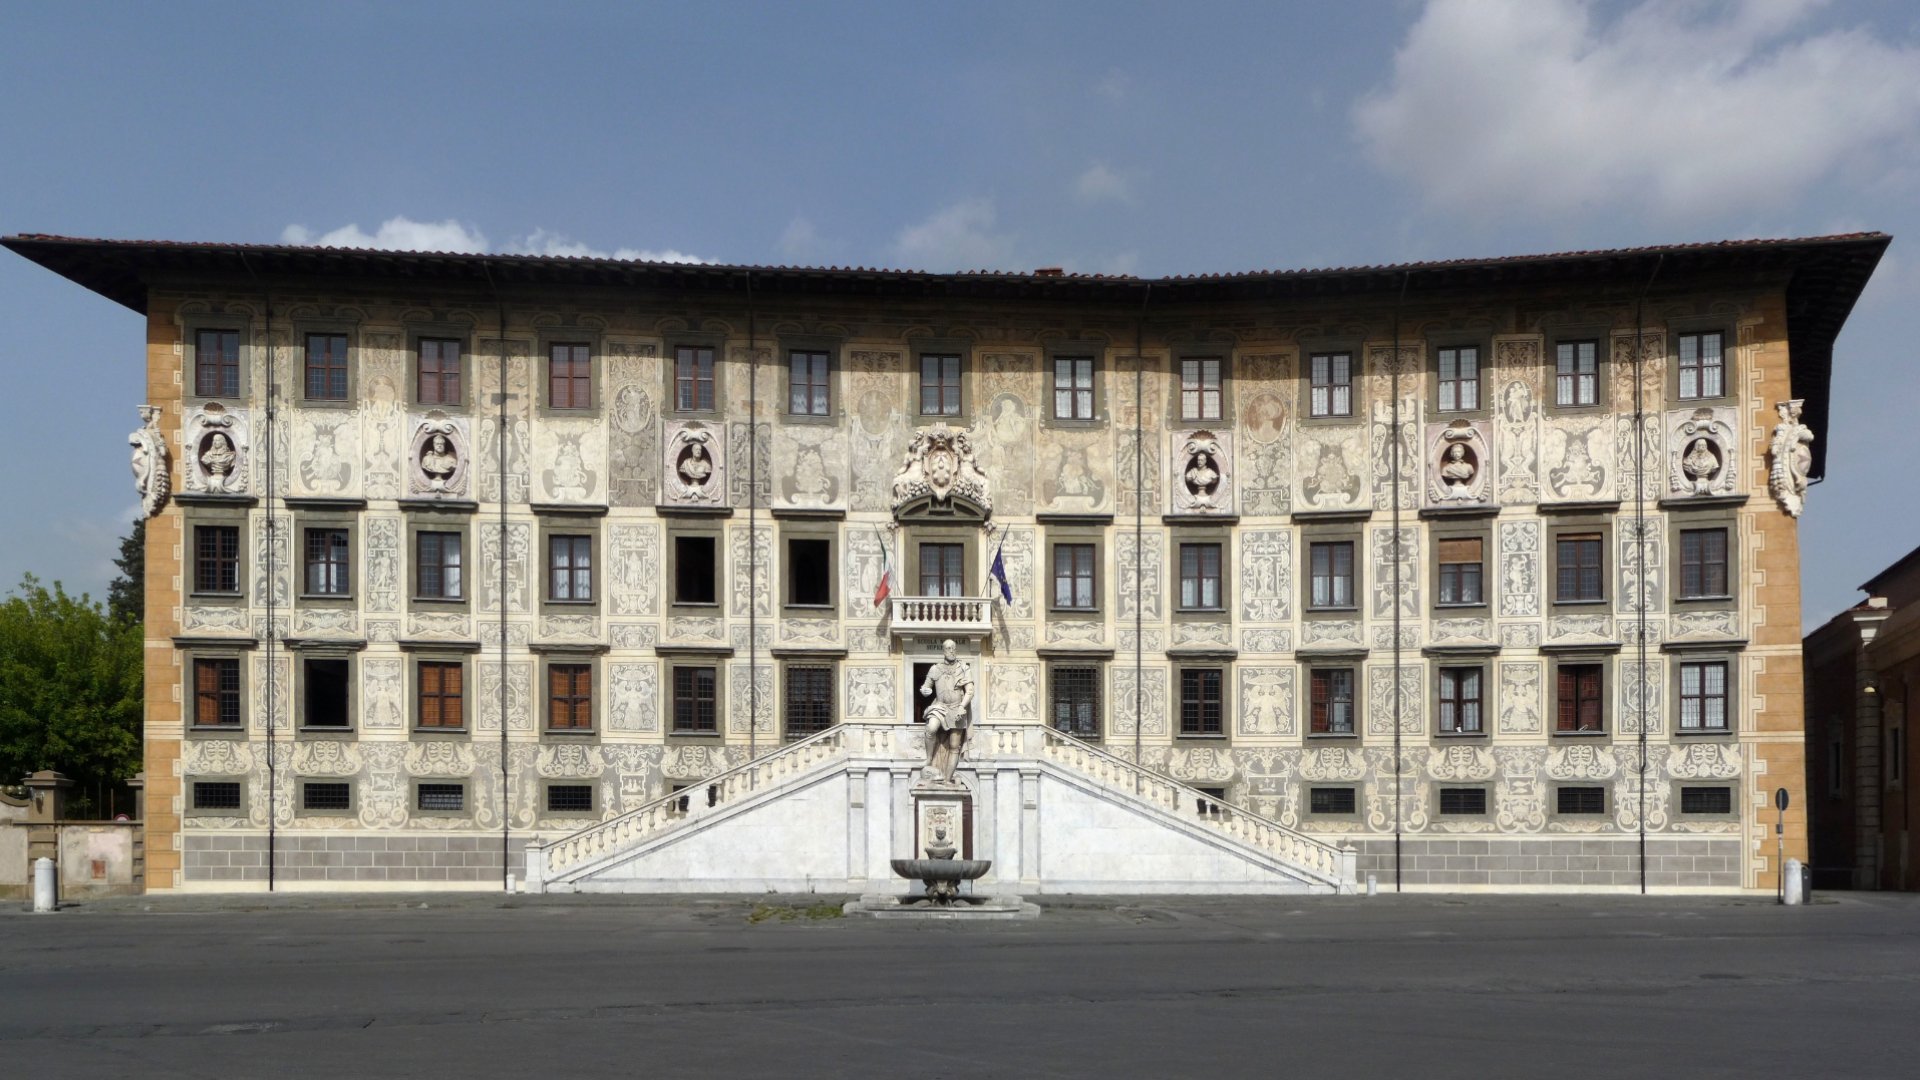 Dopo Piazza dei Miracoli, il tour ti porterà ad esplorare la medievale Piazza dei Cavalieri, sede della Scuola Normale Superiore di Pisa